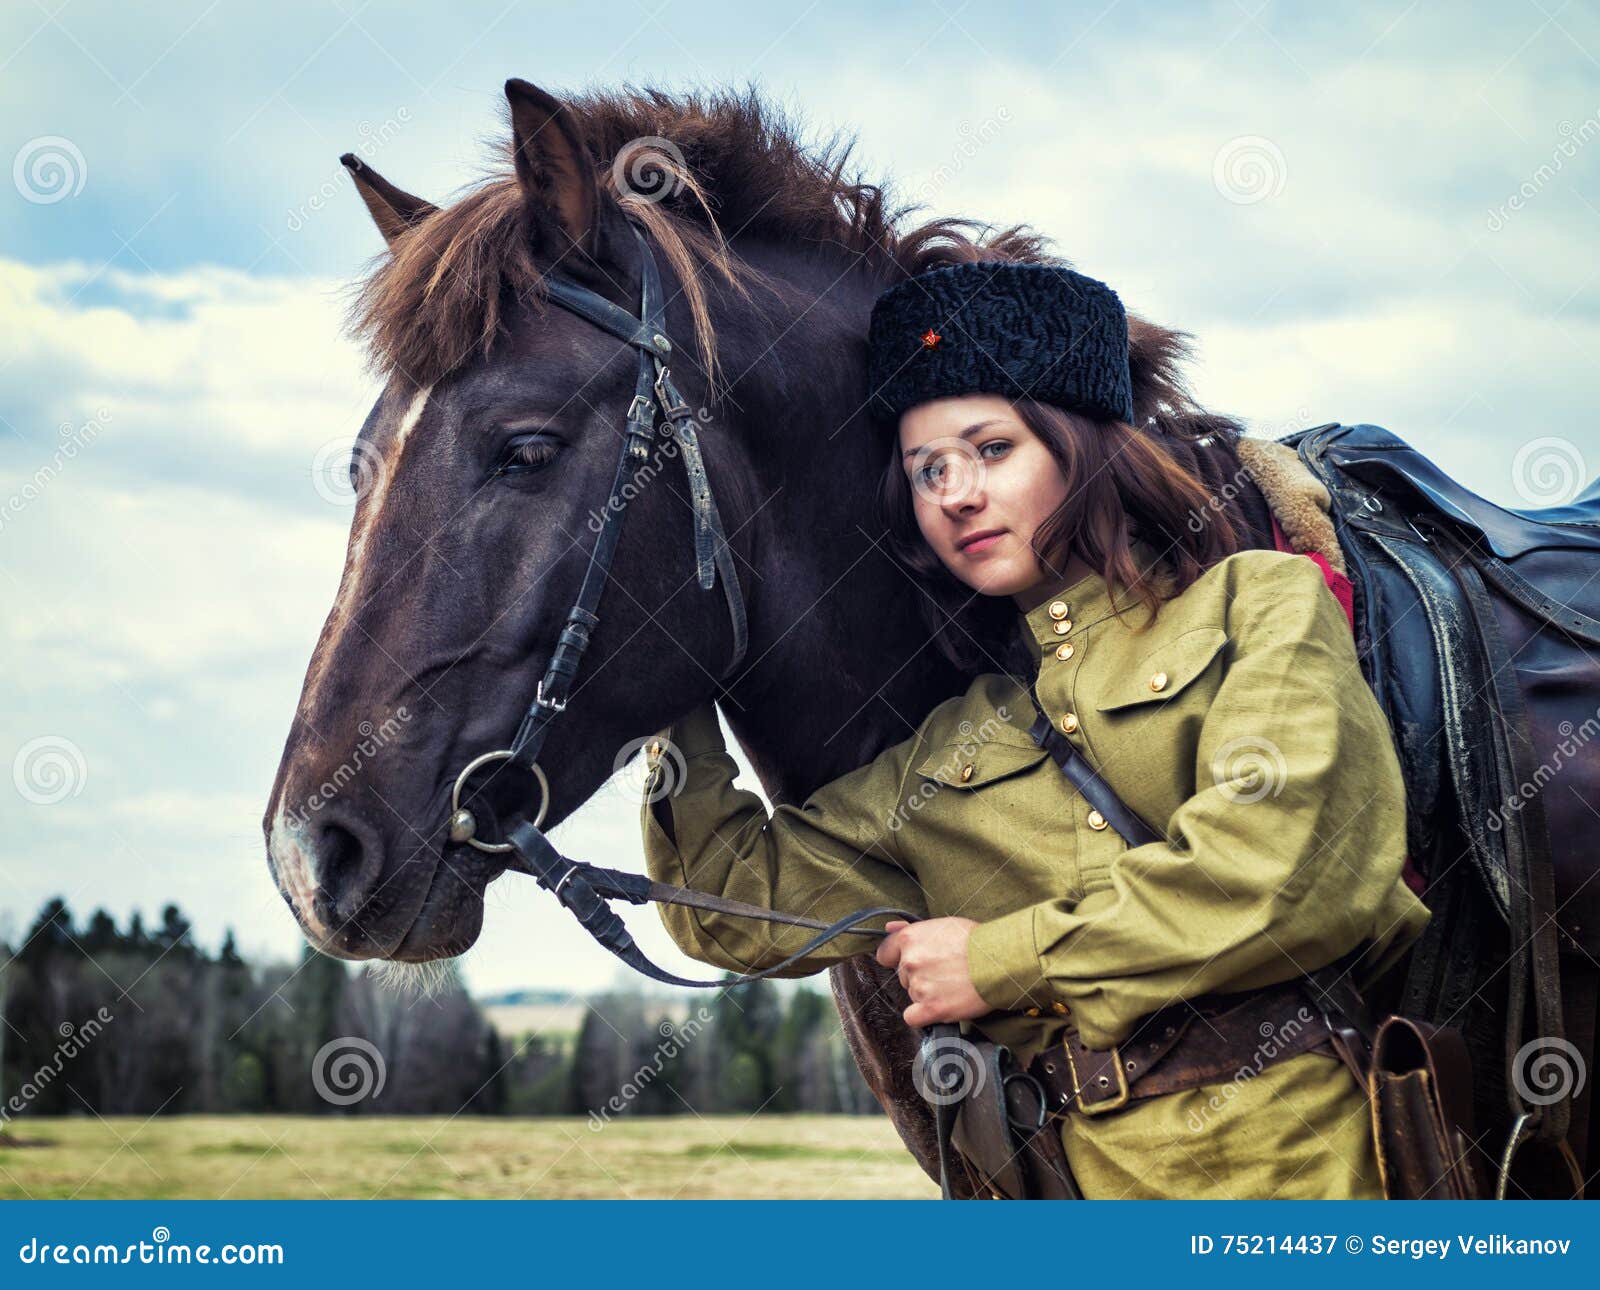 В форме на коне. Девушка в военной форме на лошади. Военный конь. Казачка на коне. Девушка с лошадью.